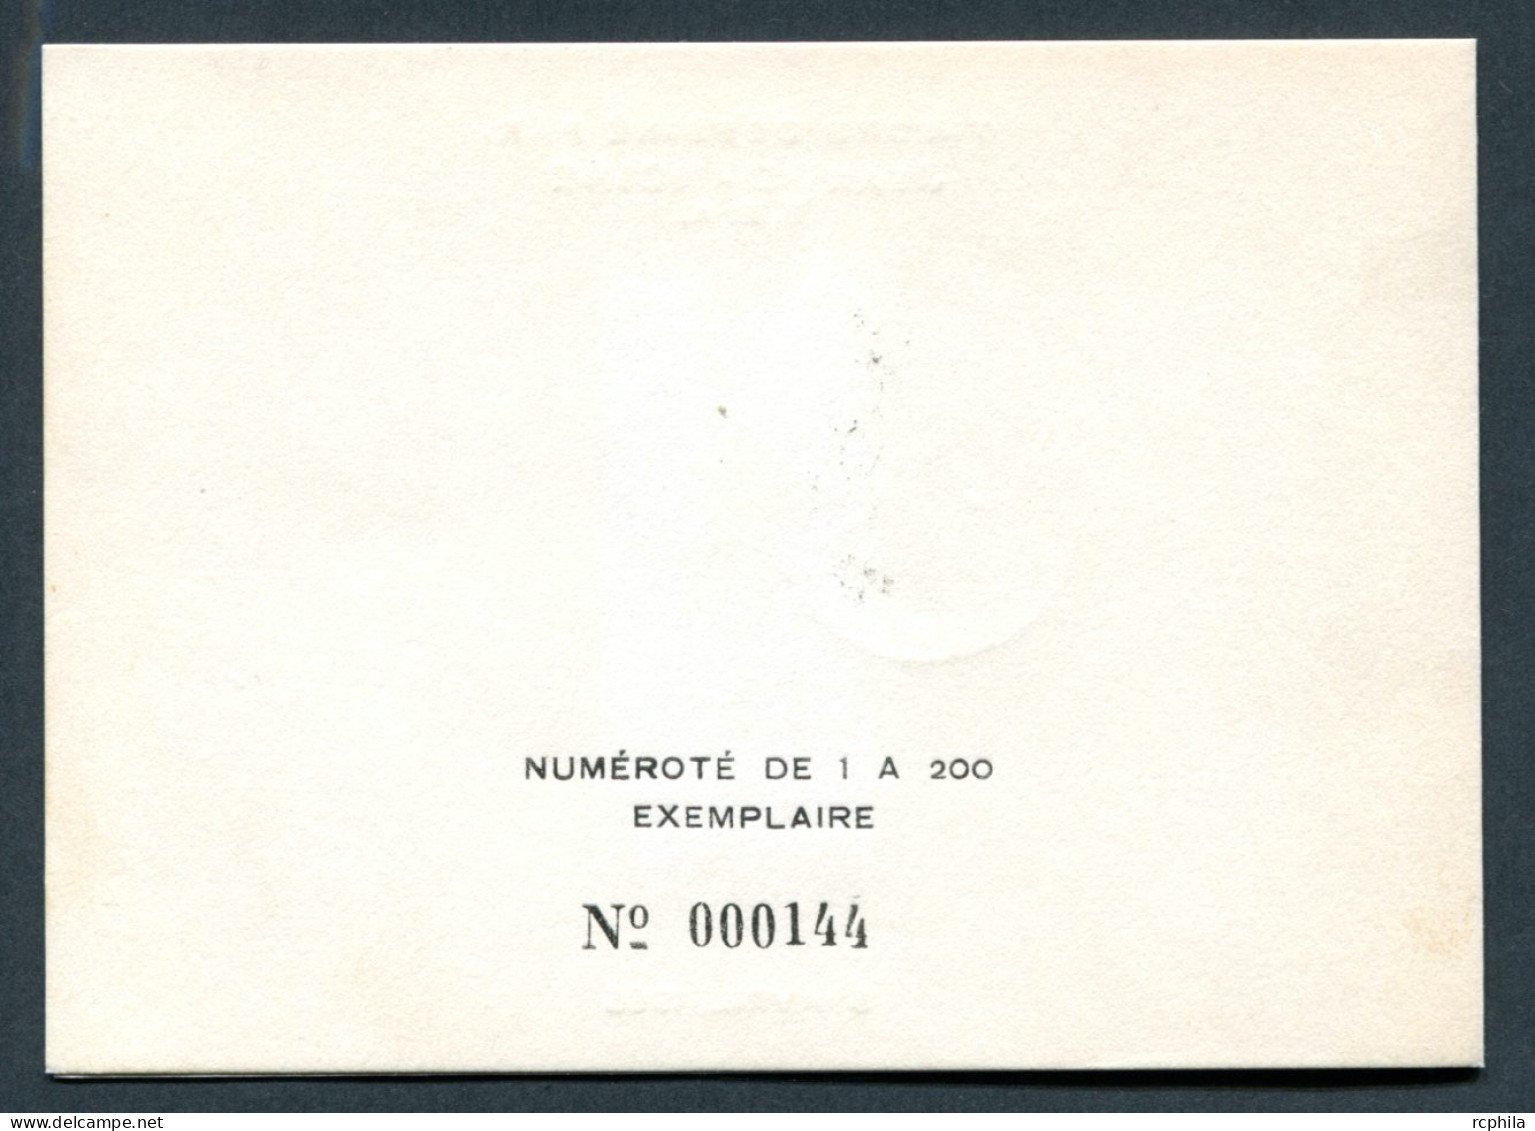 RC 27465 MAROC N° 481 FLORE MAROCAINE GLAÏEULS ENCART 1er JOUR TIRAGE 200 Ex SIGNÉ JEAN DANDINE - Marruecos (1956-...)